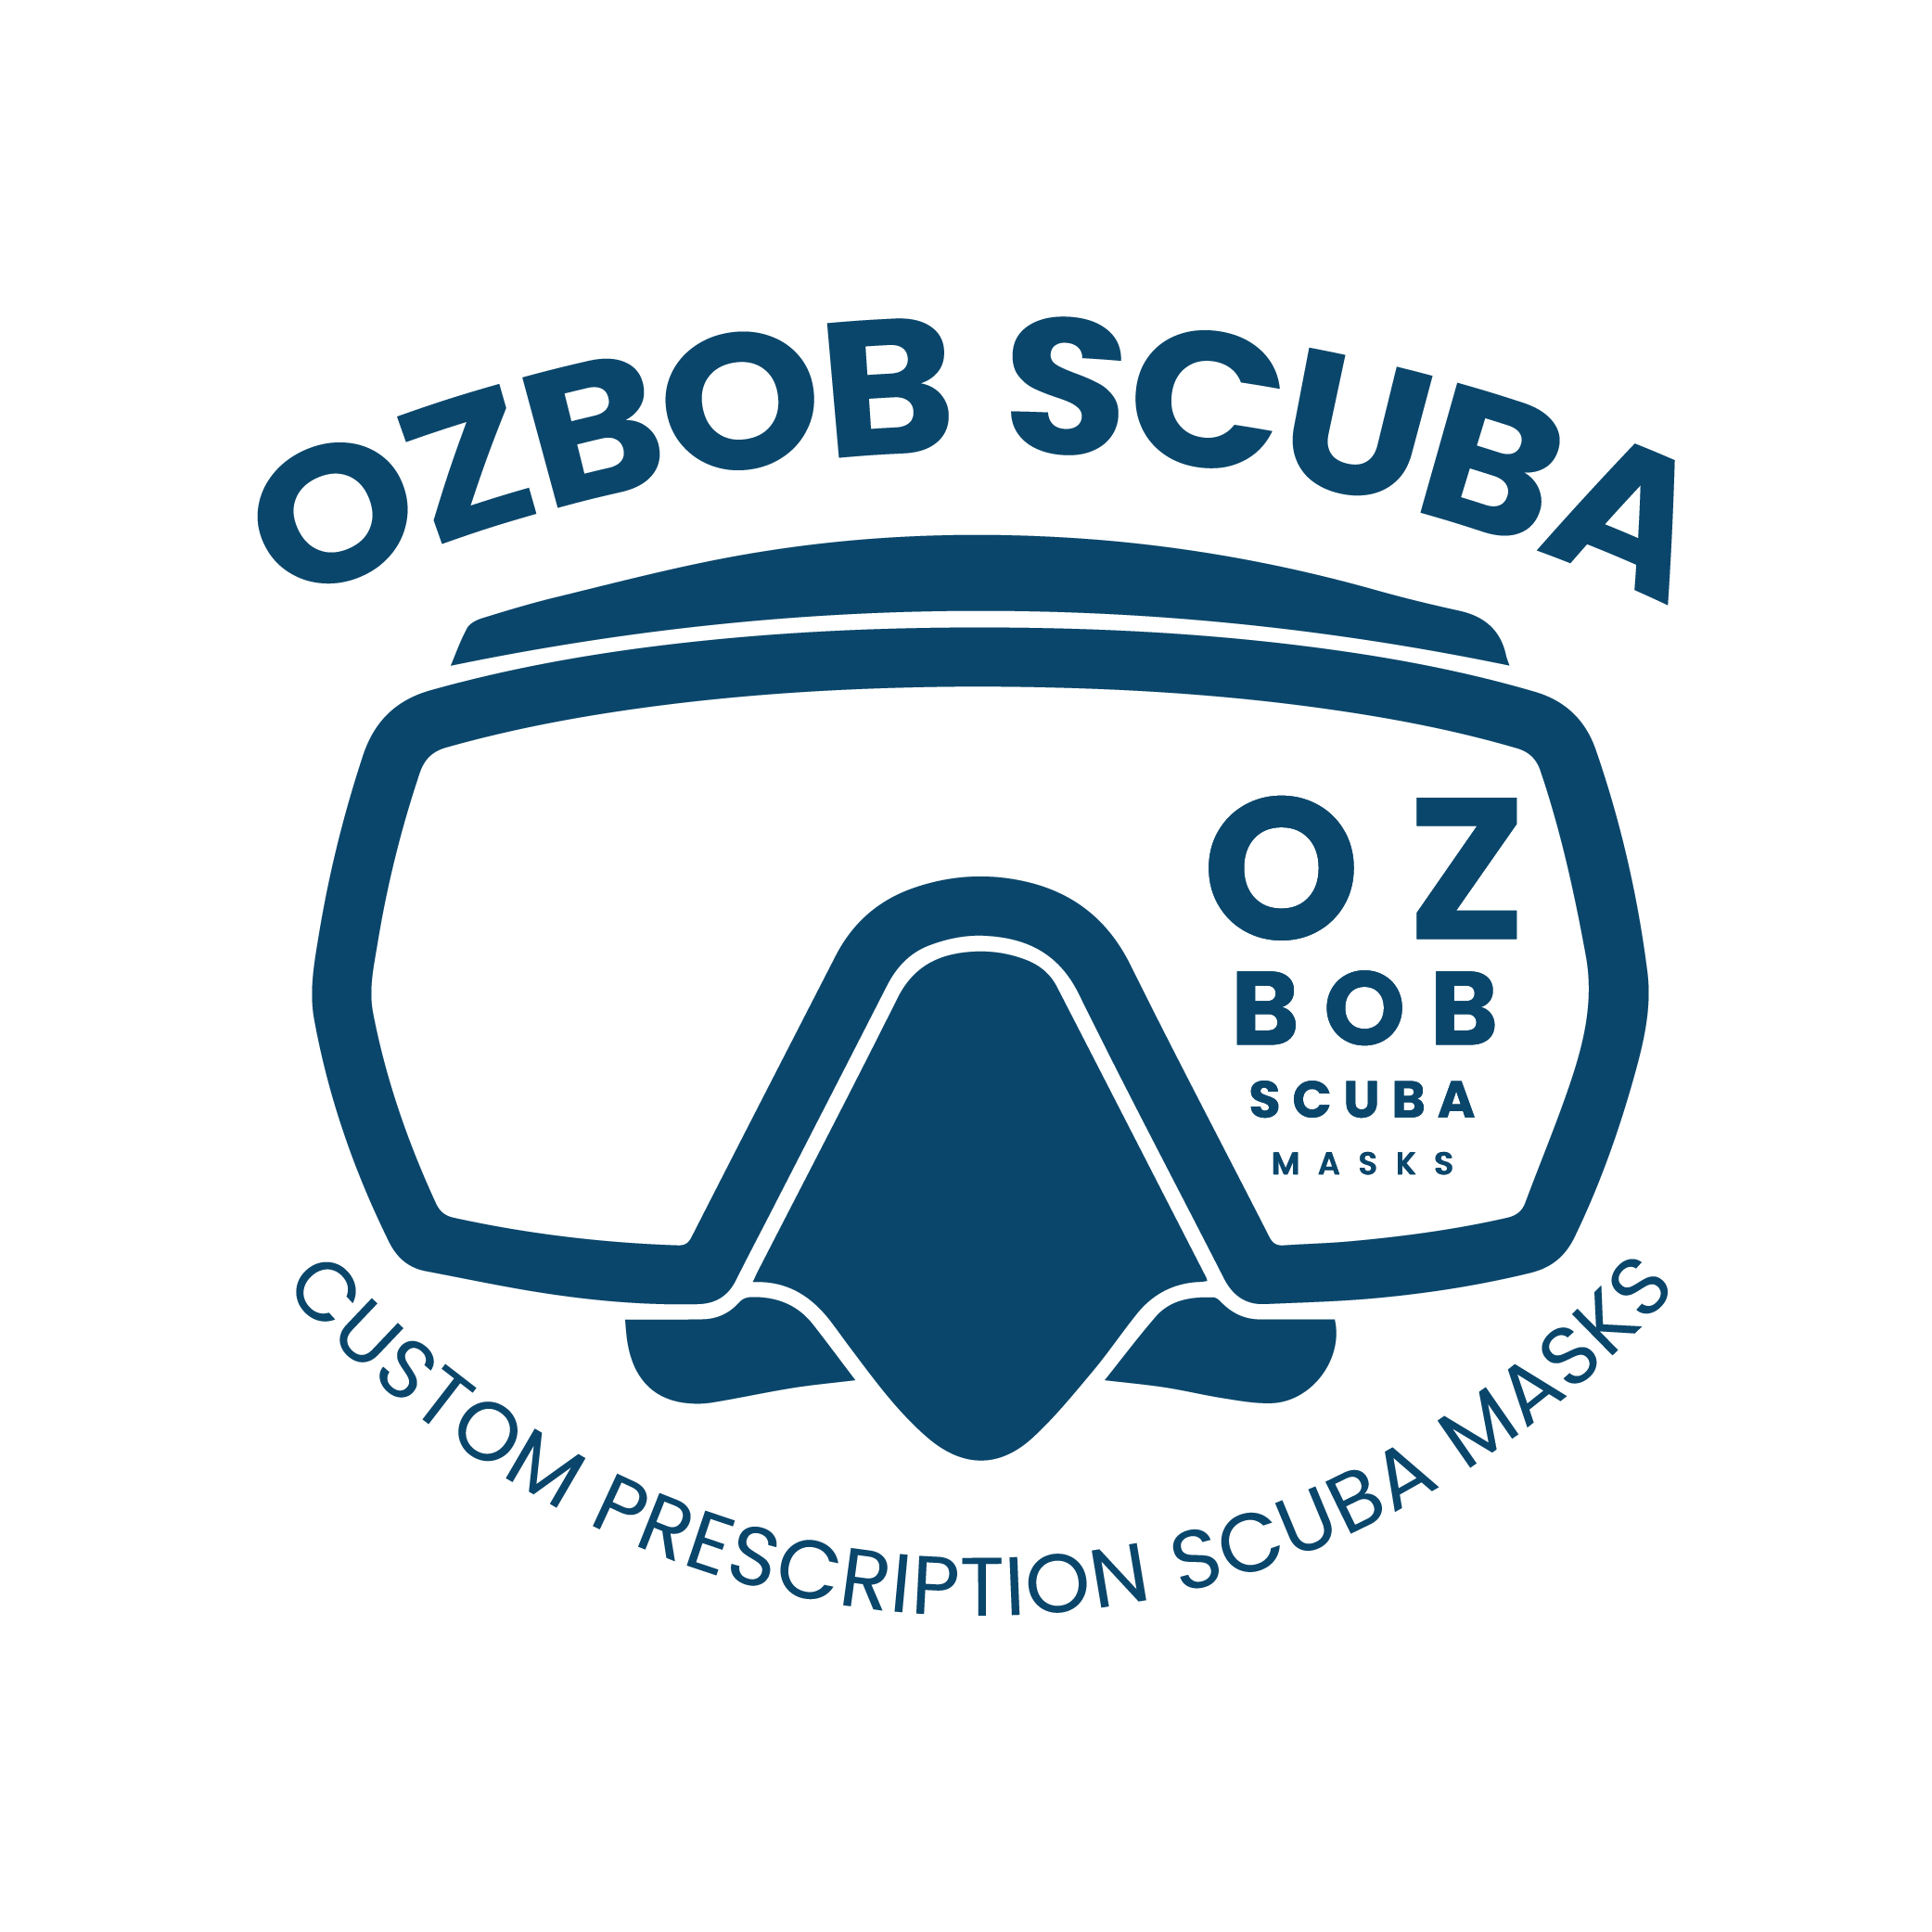 How to Order-Ozbob Scuba